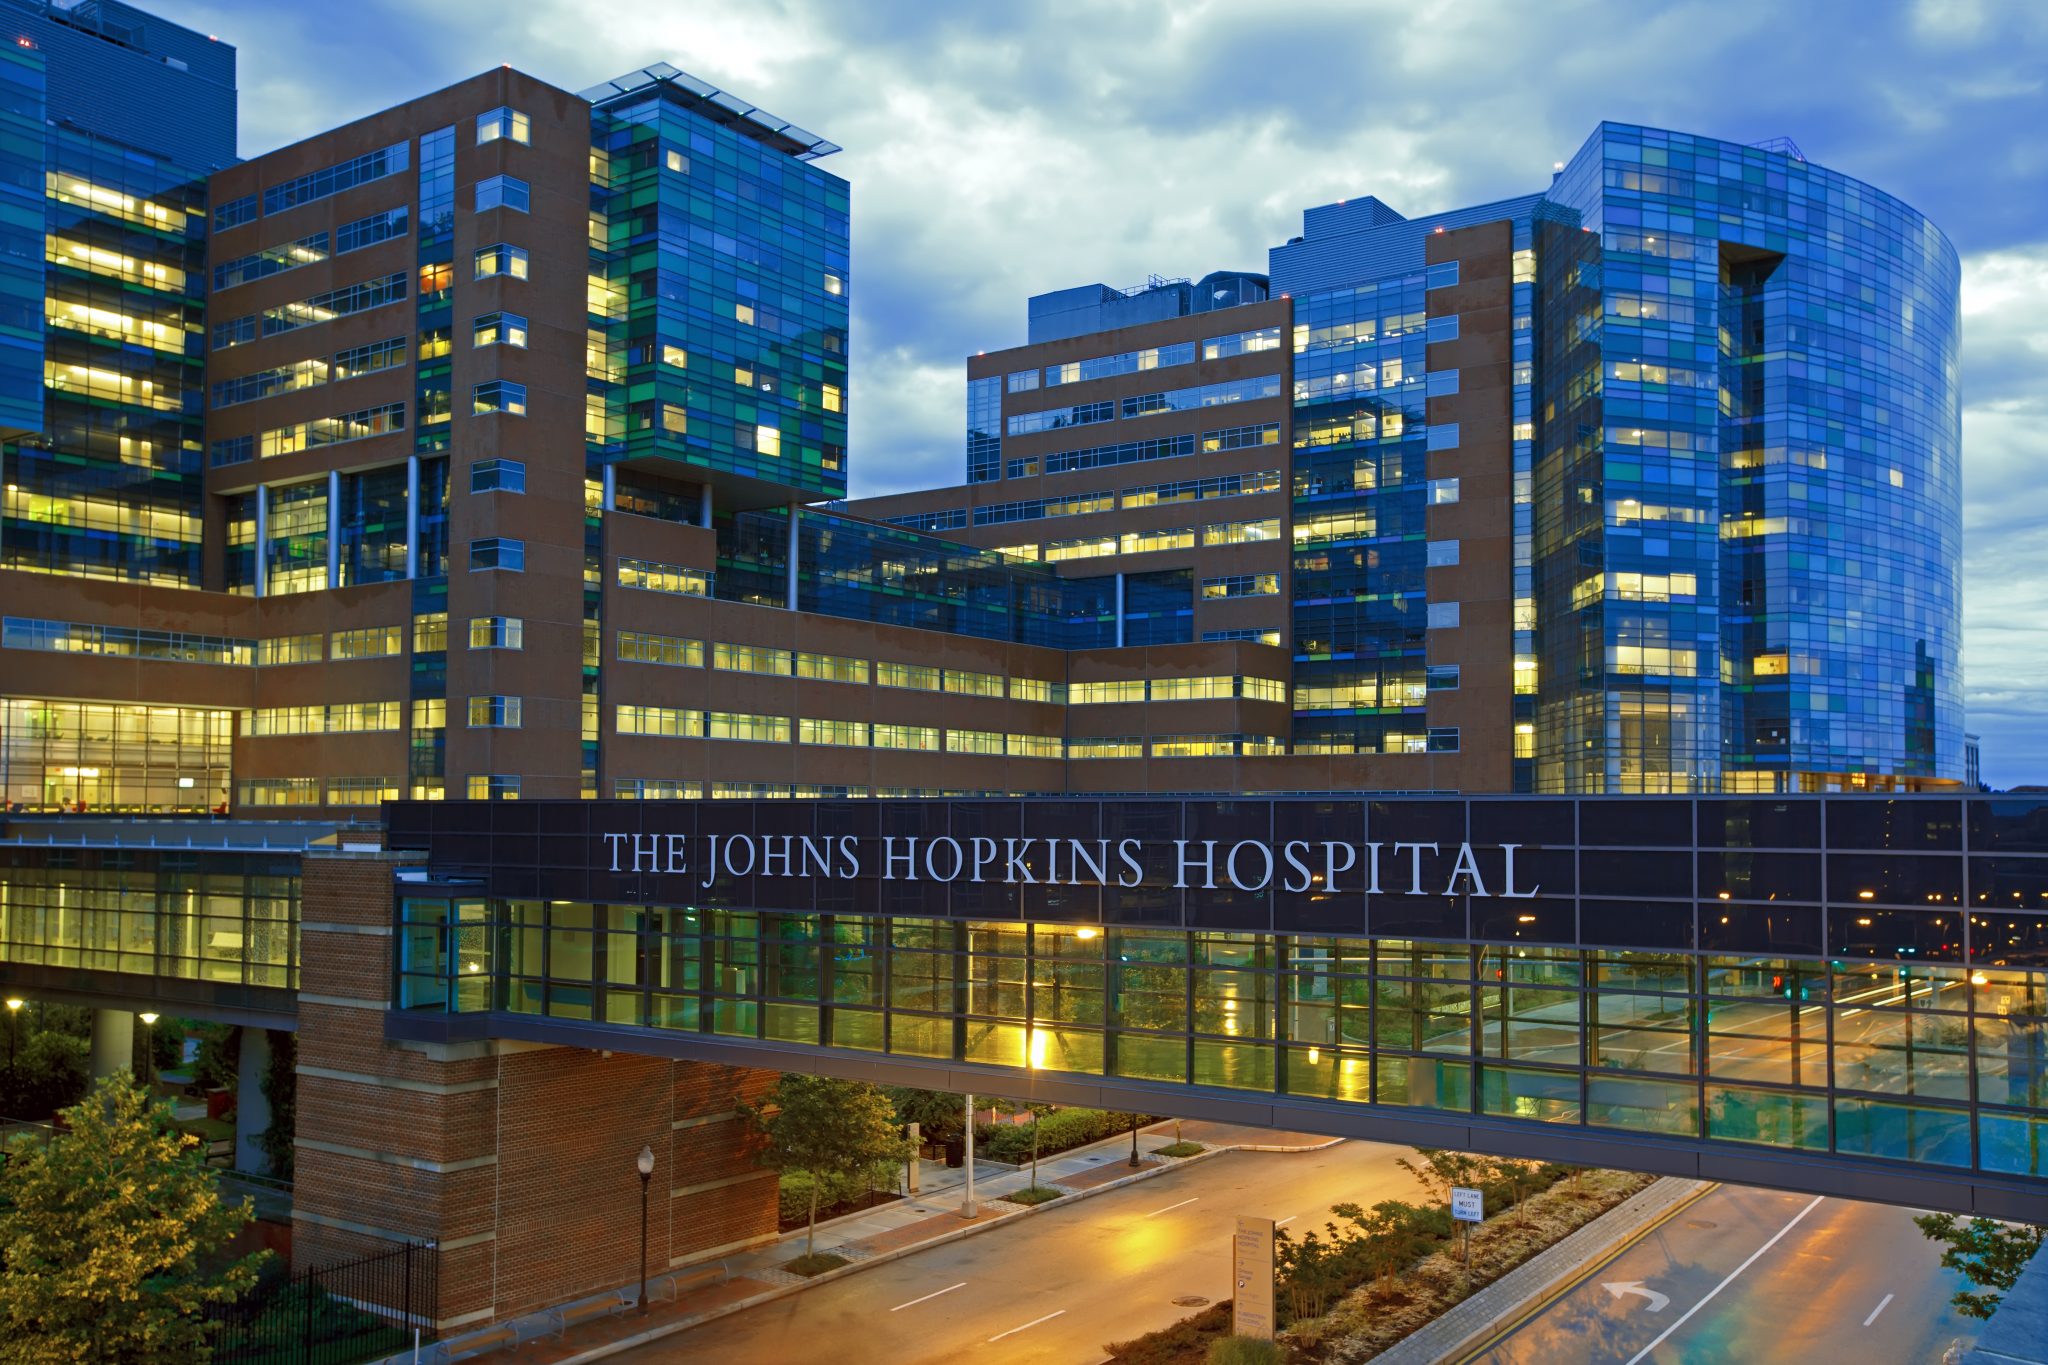 Университет джона хопкинса. Больница Джонса Хопкинса Балтимор. Больница Джона Хопкинса. Больница Джона Хопкинса в Балтиморе. Университет Джона Хопкинса, США.